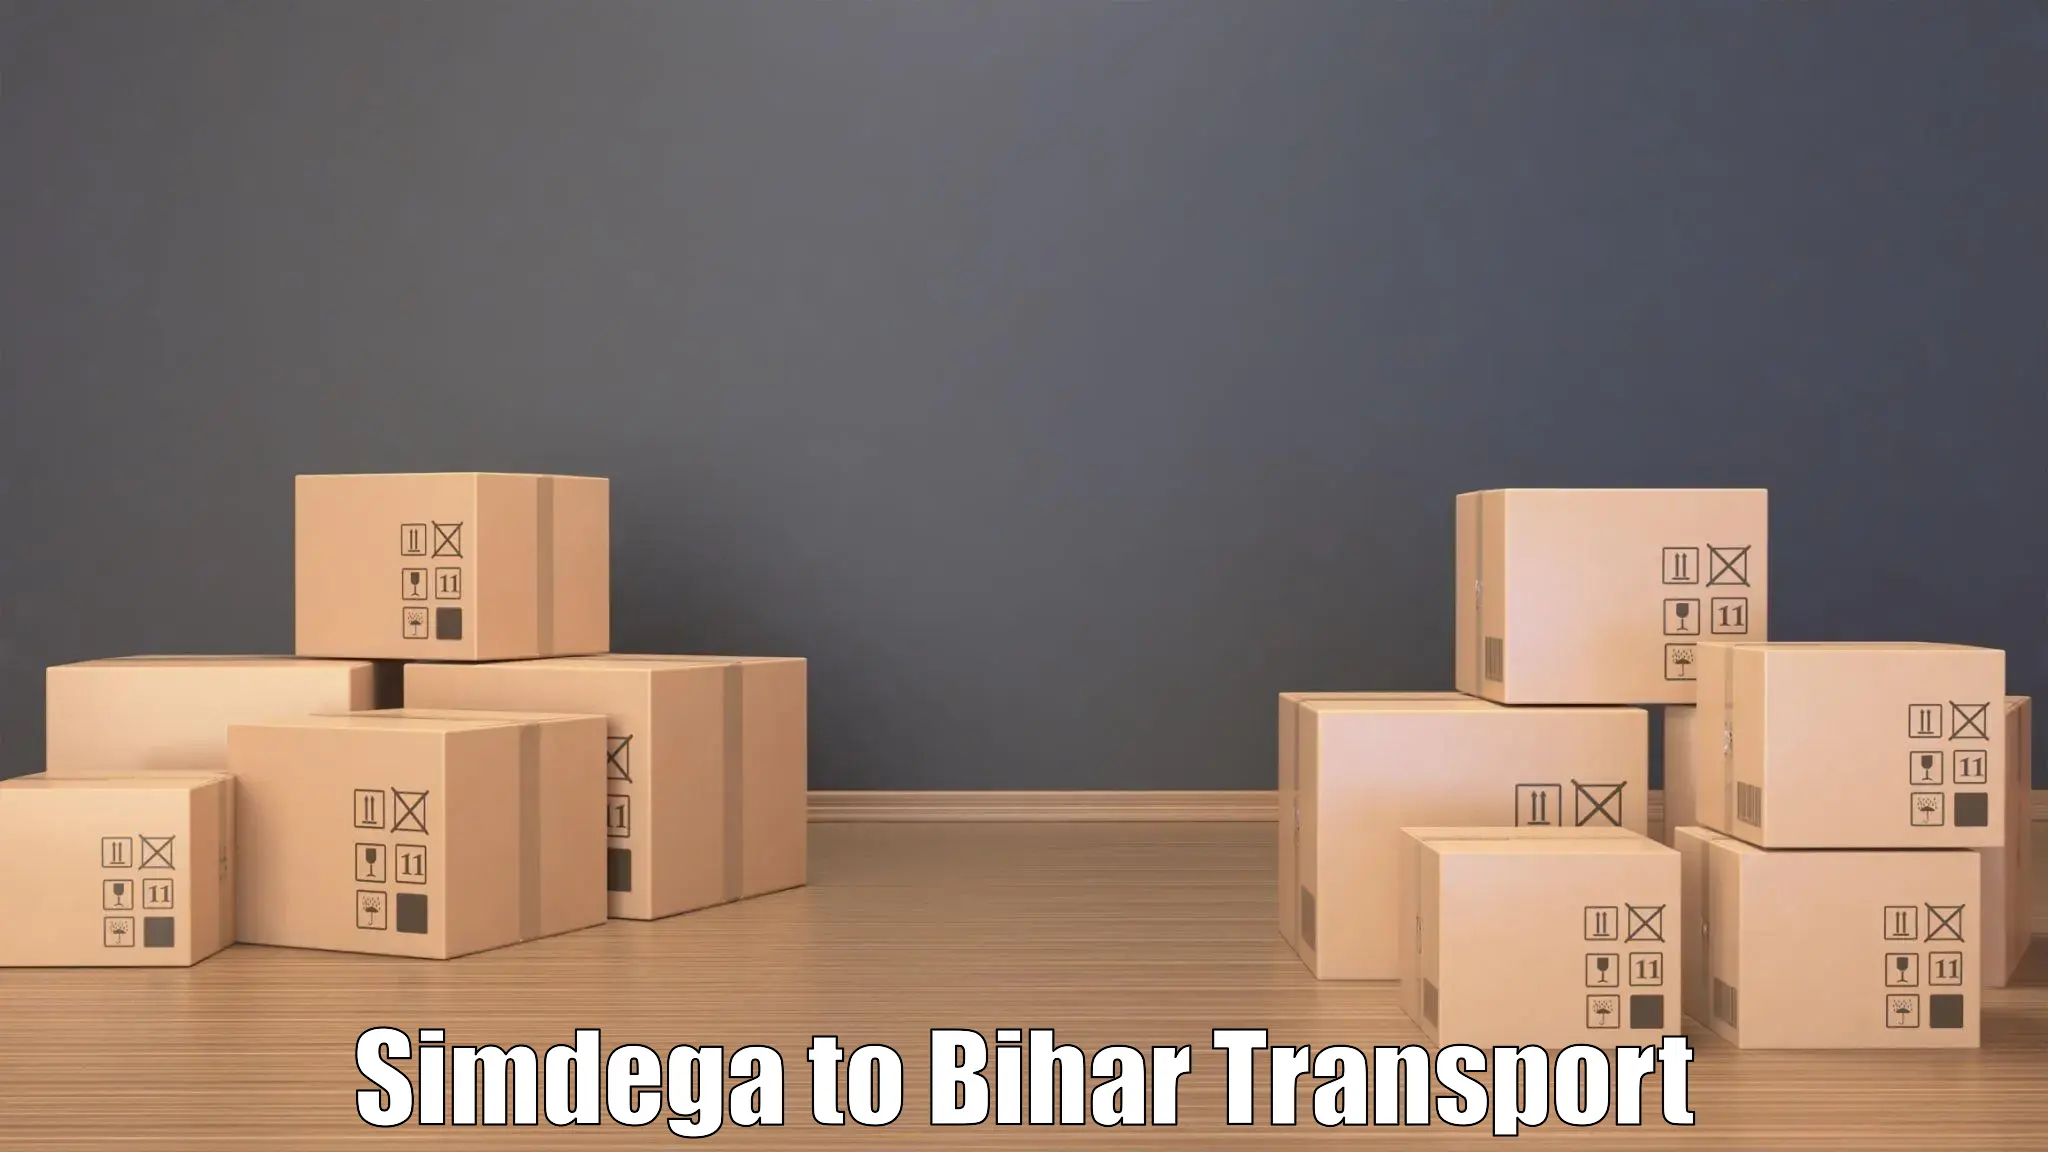 Transport in sharing in Simdega to Manjhaul